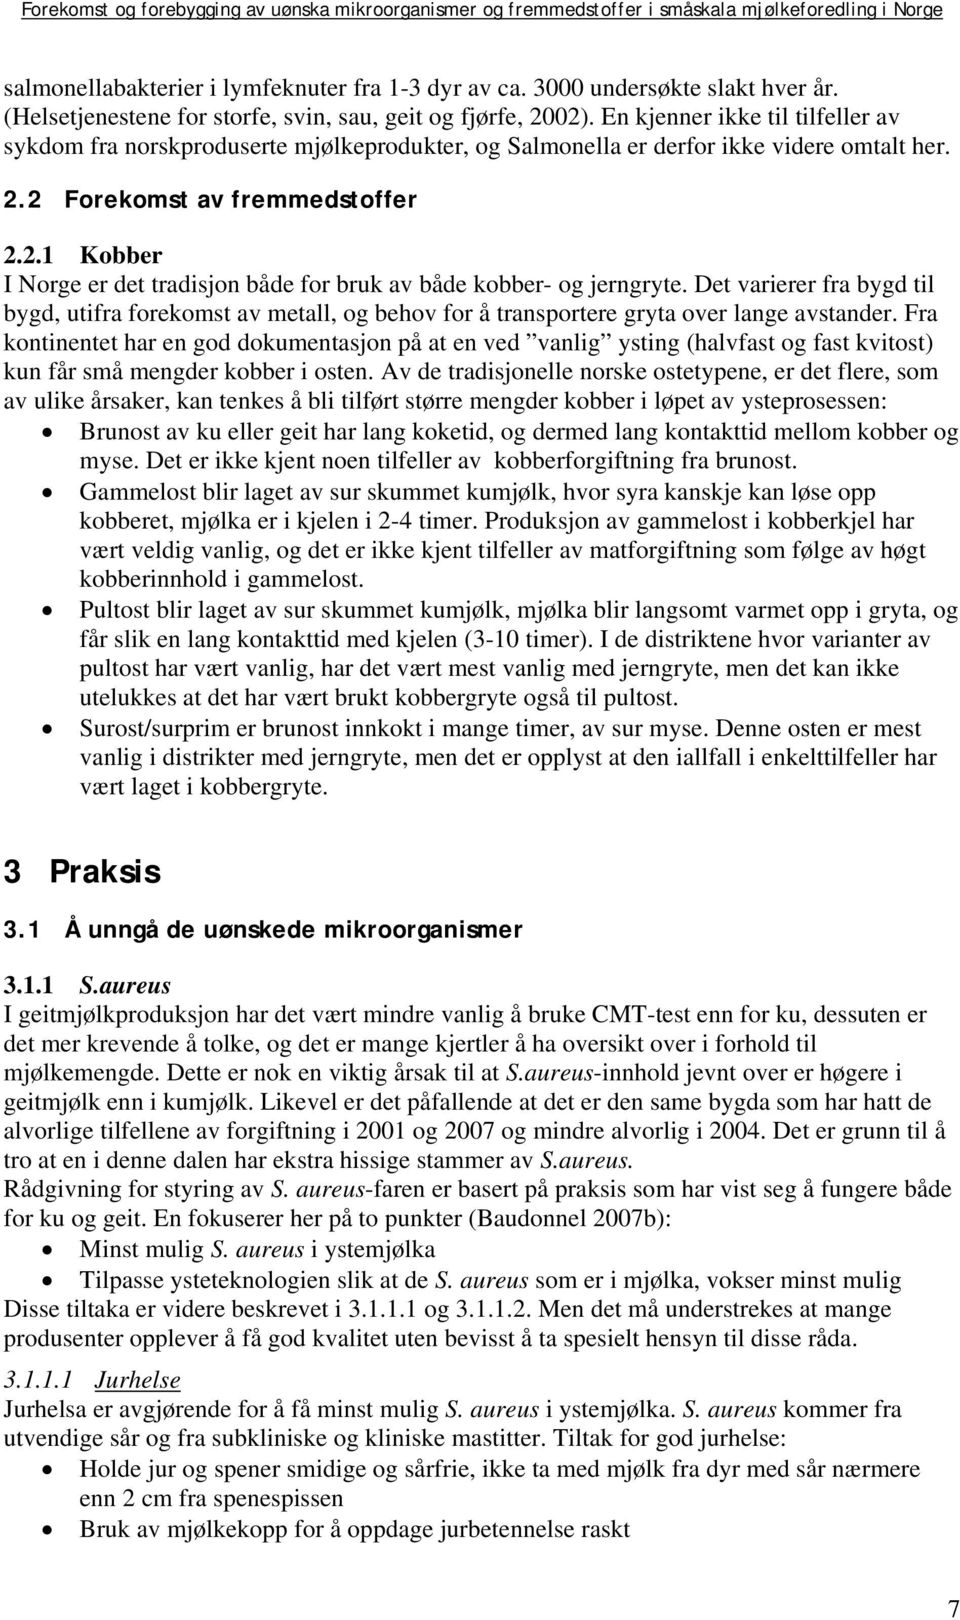 2 Forekomst av fremmedstoffer 2.2.1 Kobber I Norge er det tradisjon både for bruk av både kobber- og jerngryte.